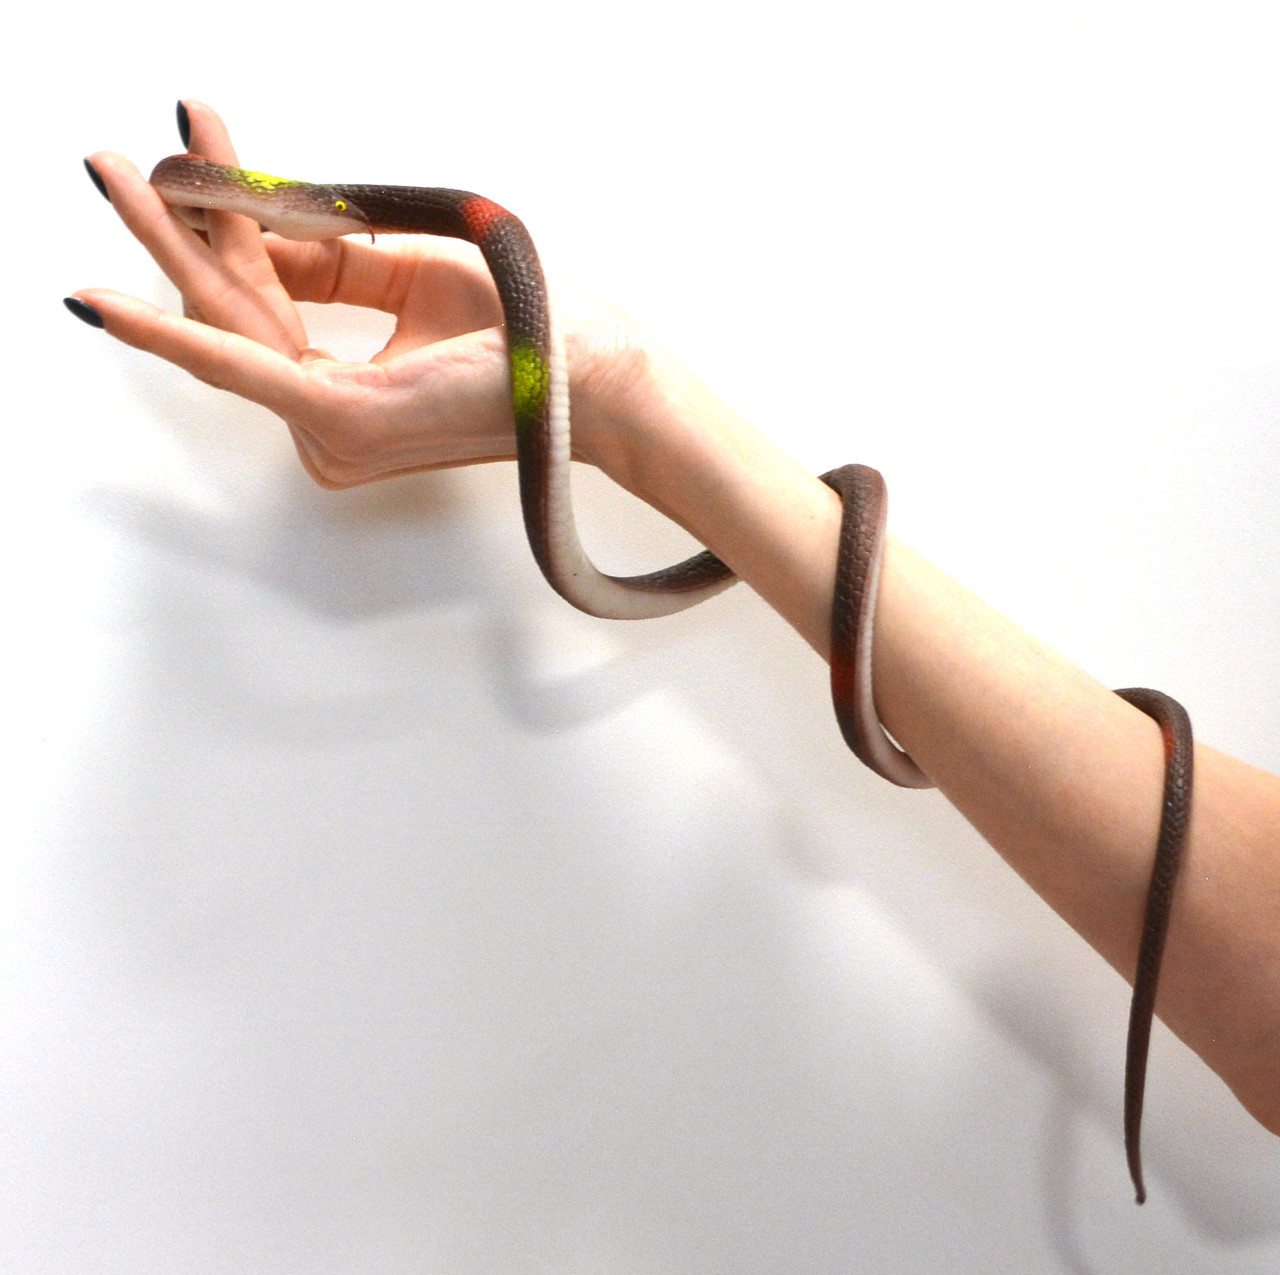 Резиновая змея игрушка антистресс темная коричневая, фото 1